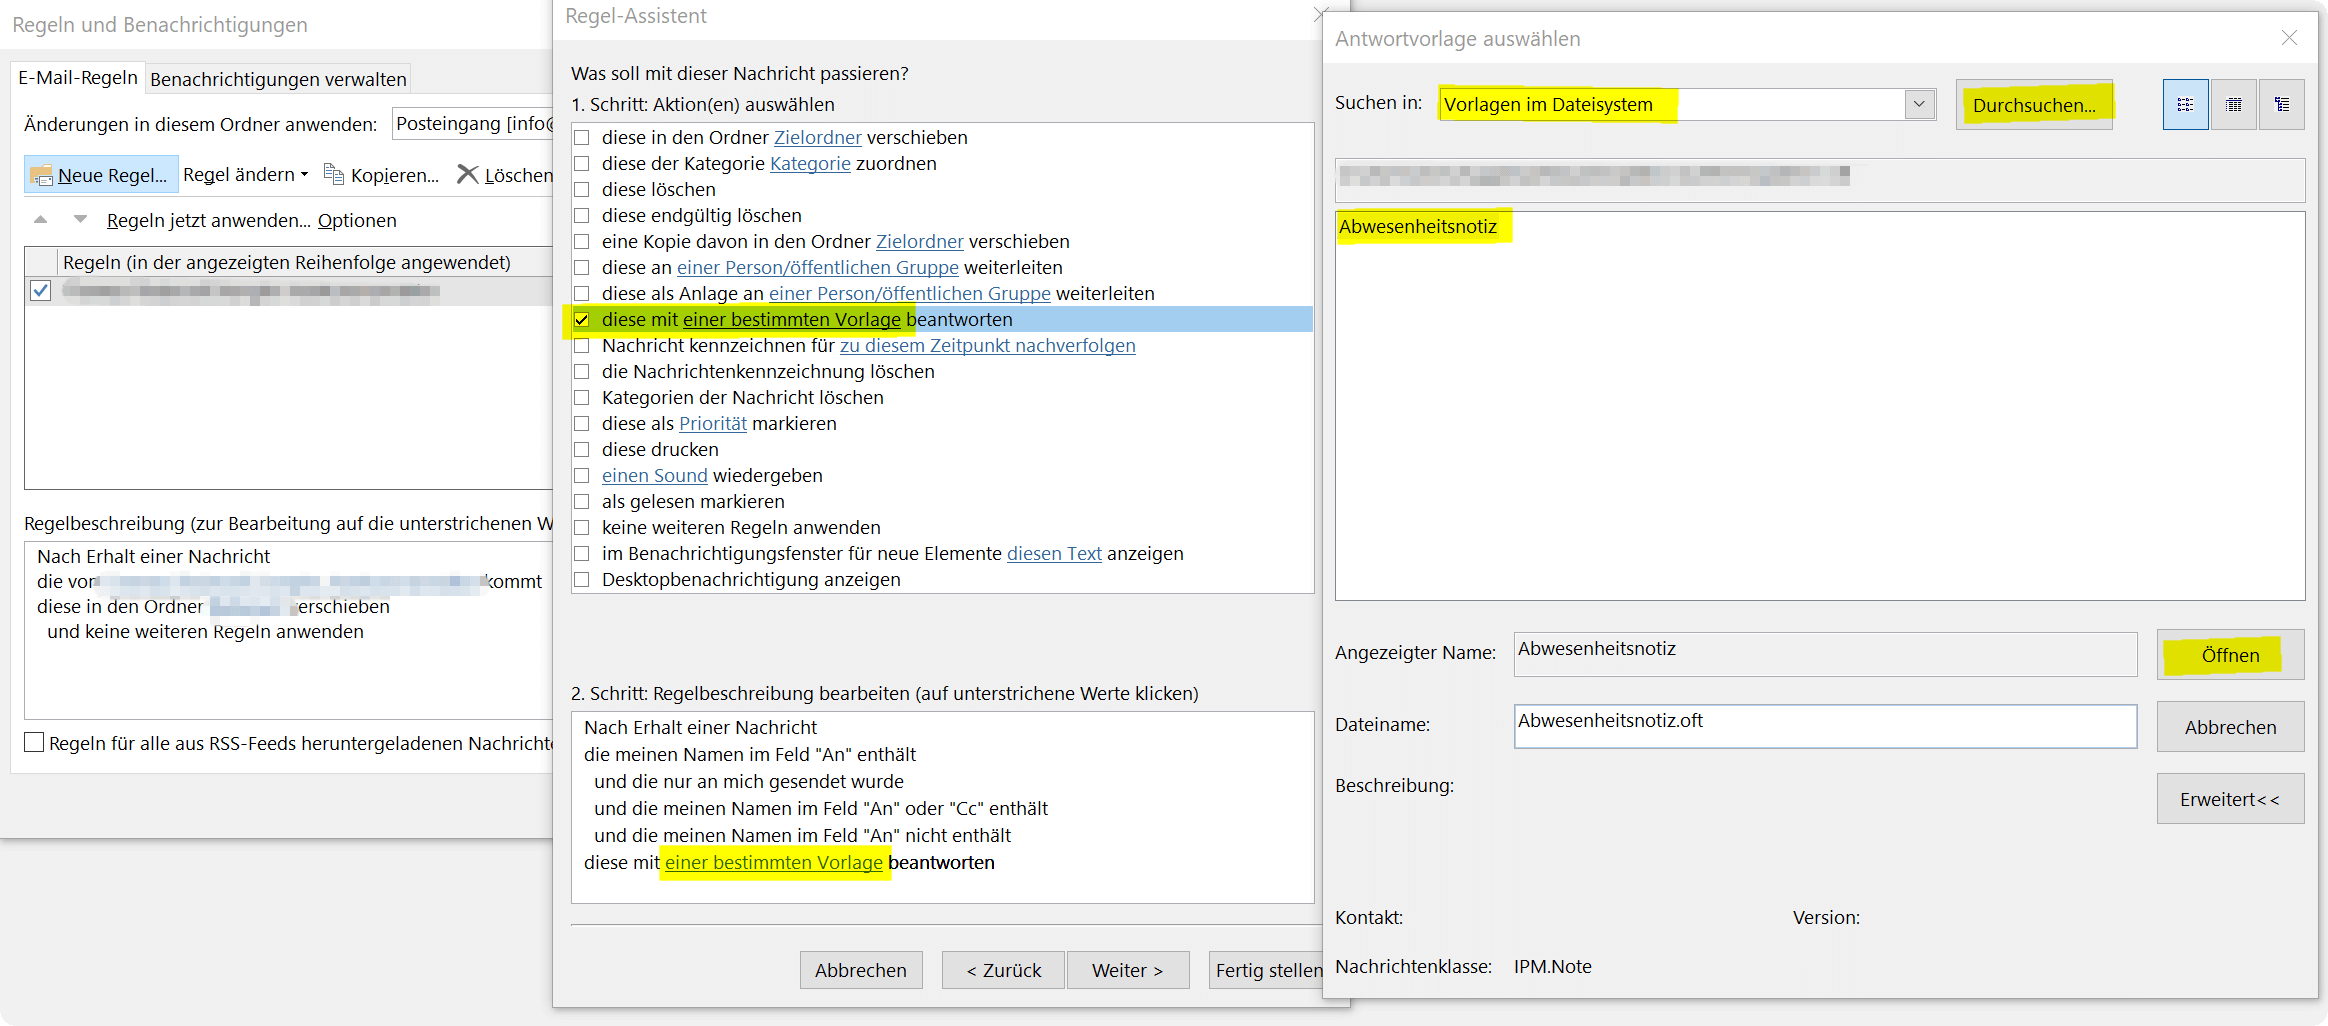 Outlook Regel Assistent - Antwortvorlage auswählen